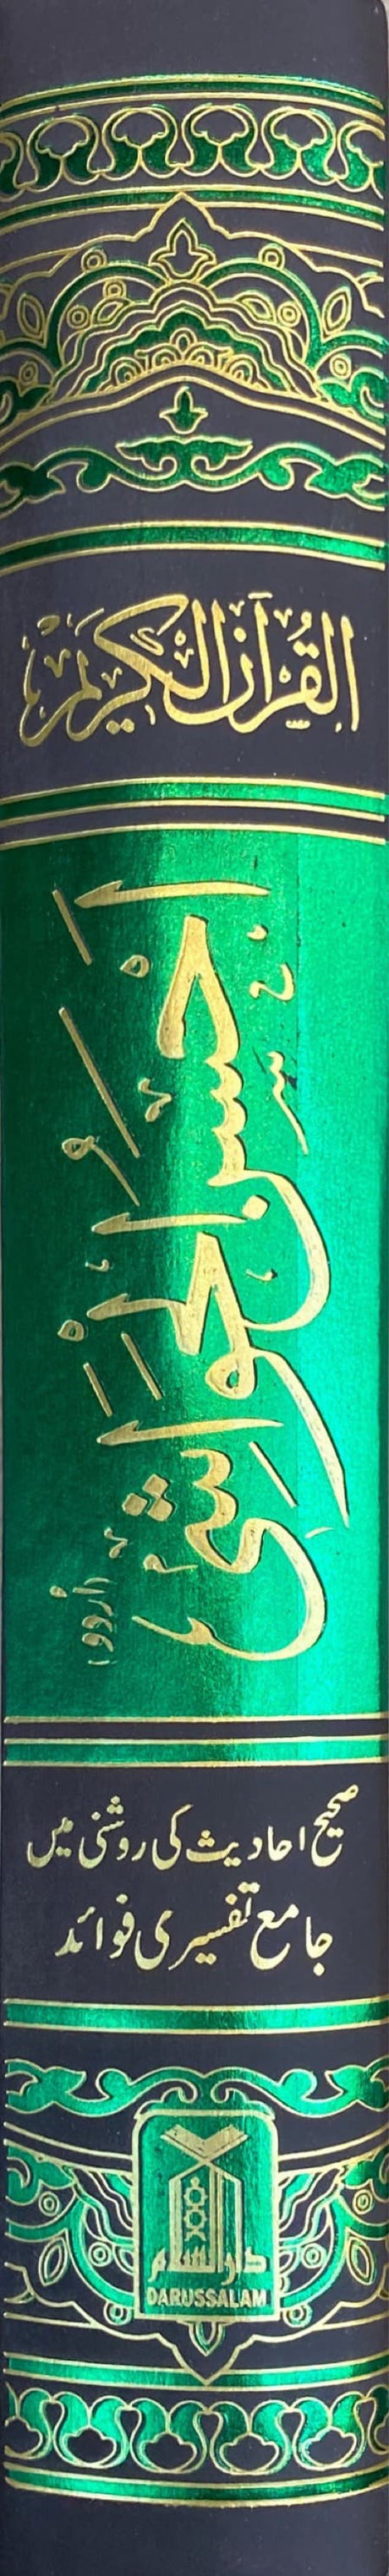 Urdu Ahsanul Hawashi Simplified Urdu Translation